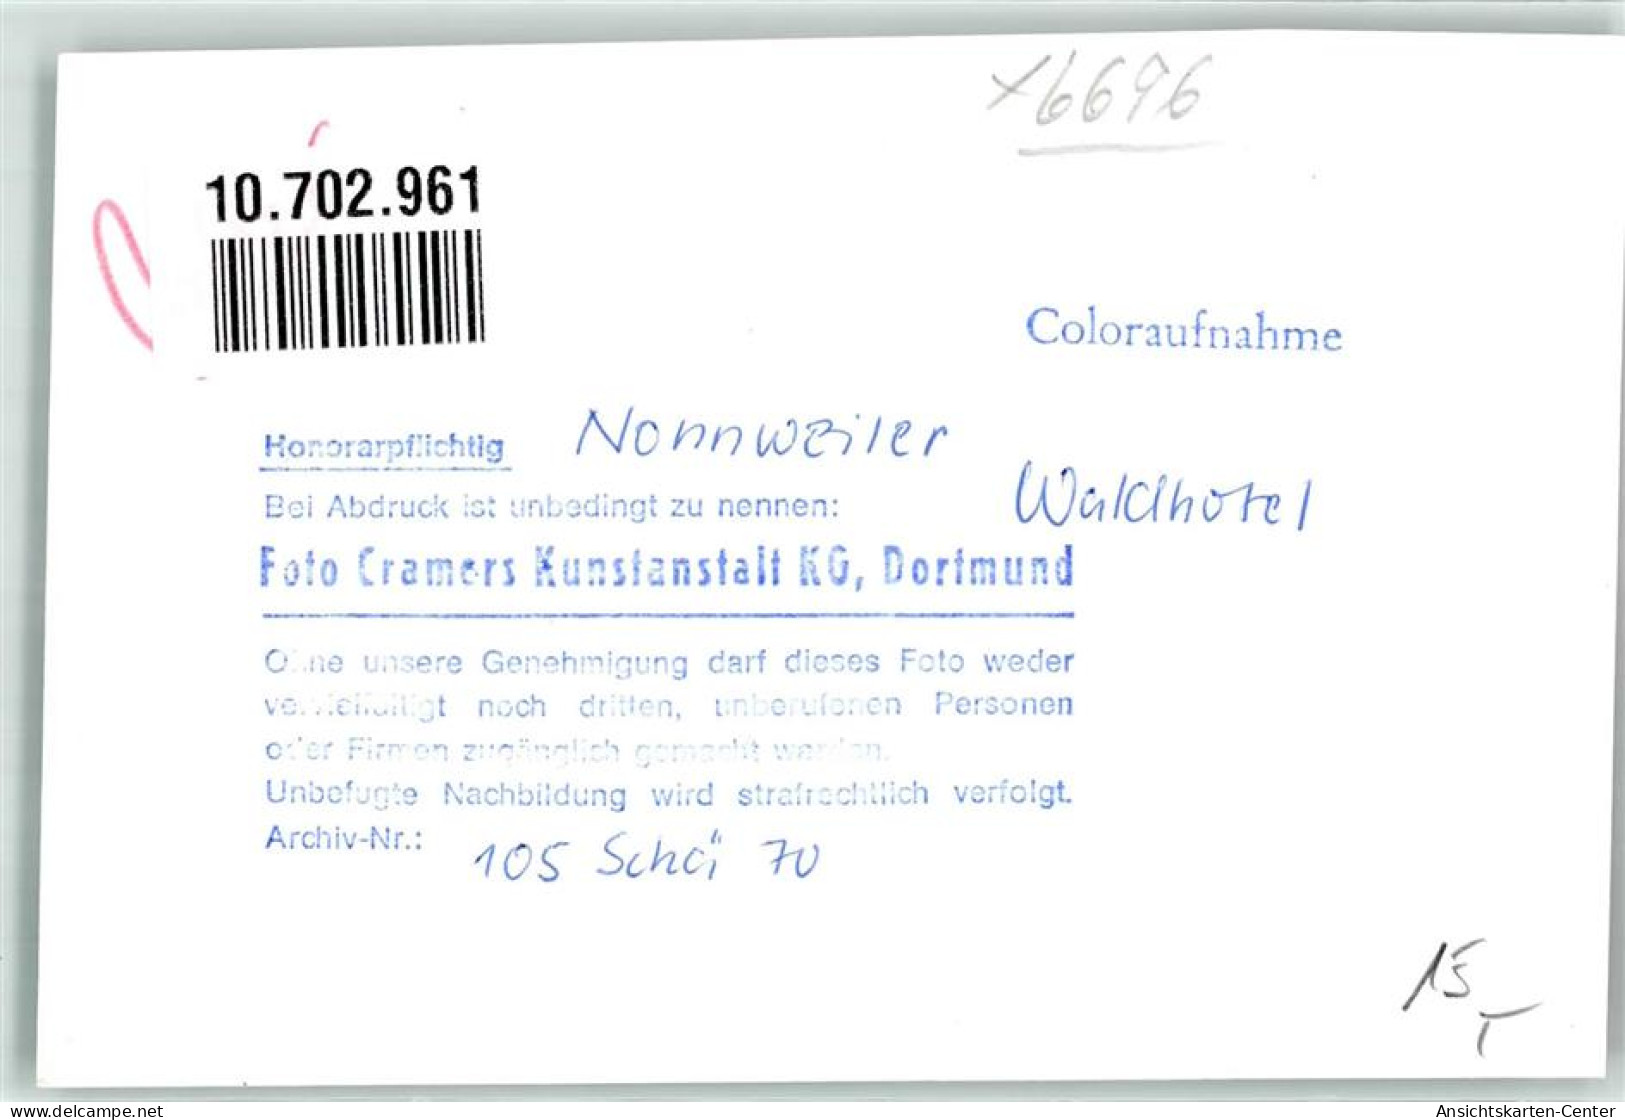 10702961 - Nonnweiler - Nonnweiler